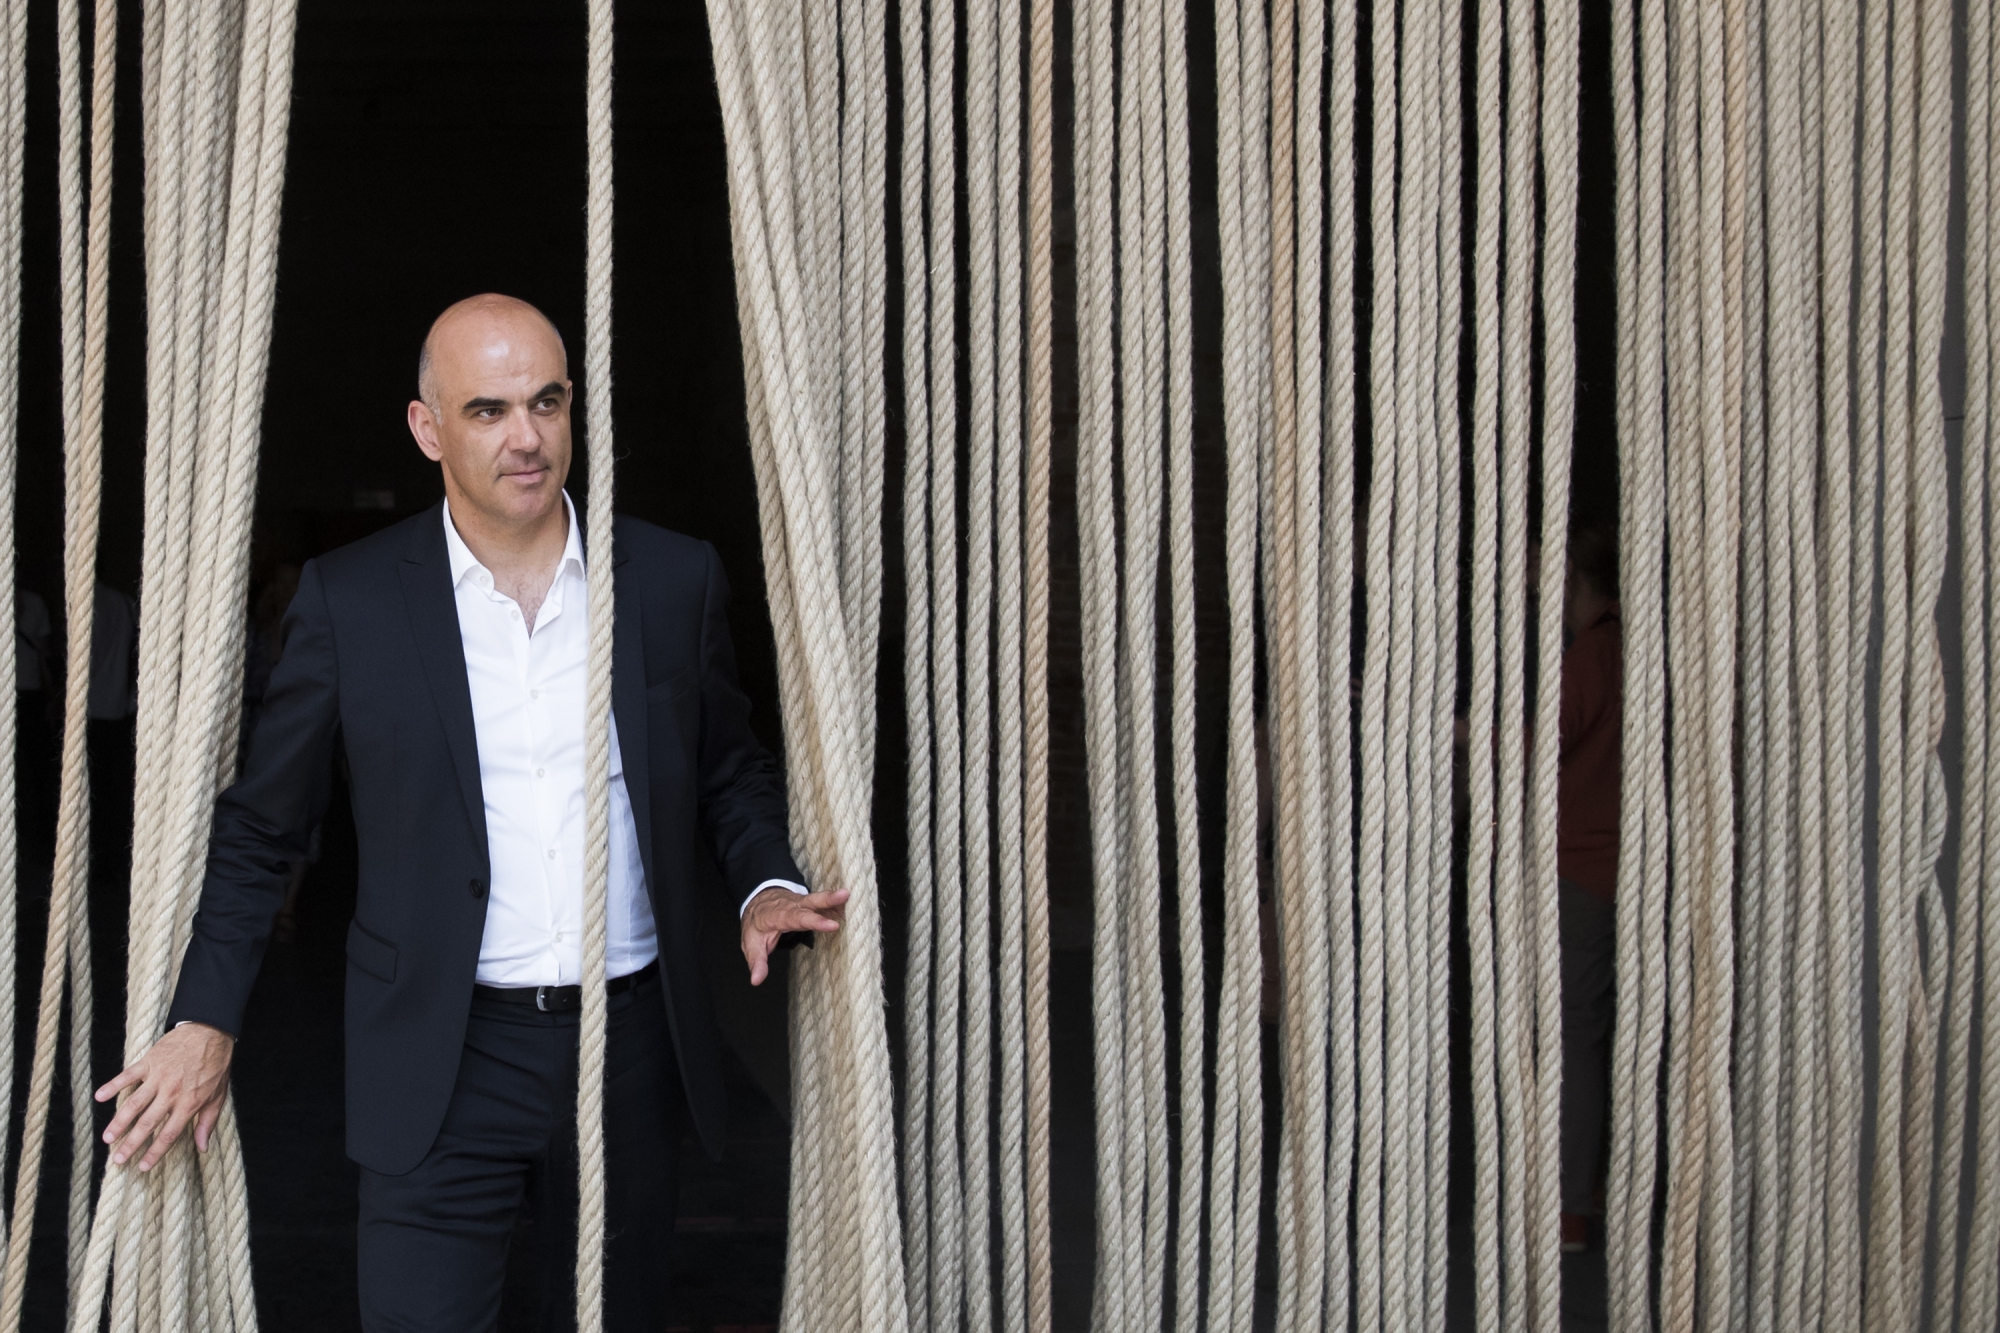 Bundespraesident Alain Berset geht durch einen Vorhang aus Seilen, waehrend einem Rundgang durch die Kunstausstellung im Arsenale, waehrend der 16. Internationalen Architekturausstellung La Biennale di Venezia am 26. Mai 2018 in Venedig, Italien. (KEYSTONE/Peter Klaunzer)